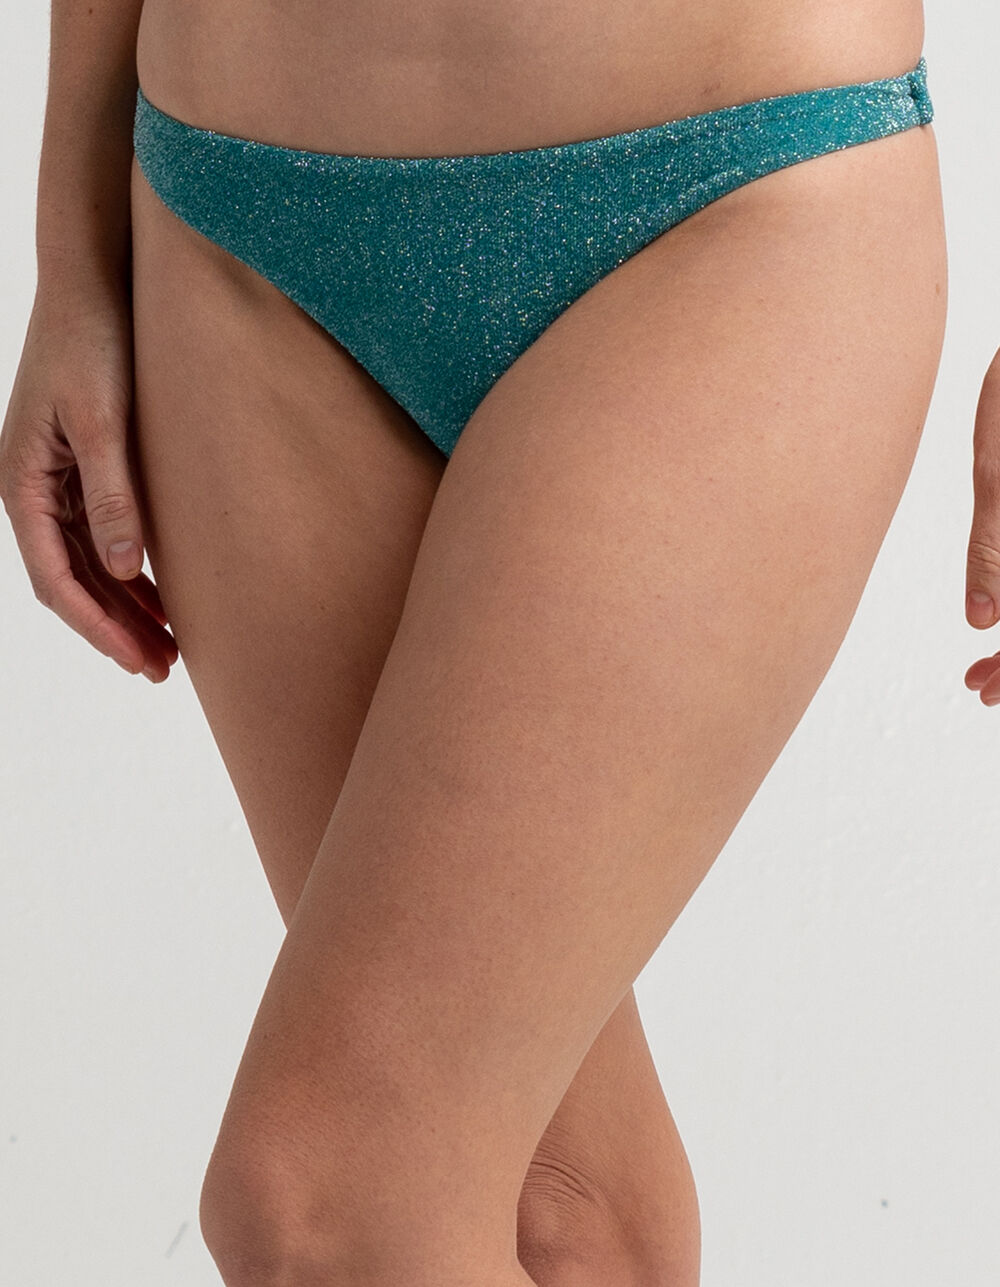 FULL TILT Textured Sprakle High Leg Cheekier Bikini Bottoms - TEAL GREEN